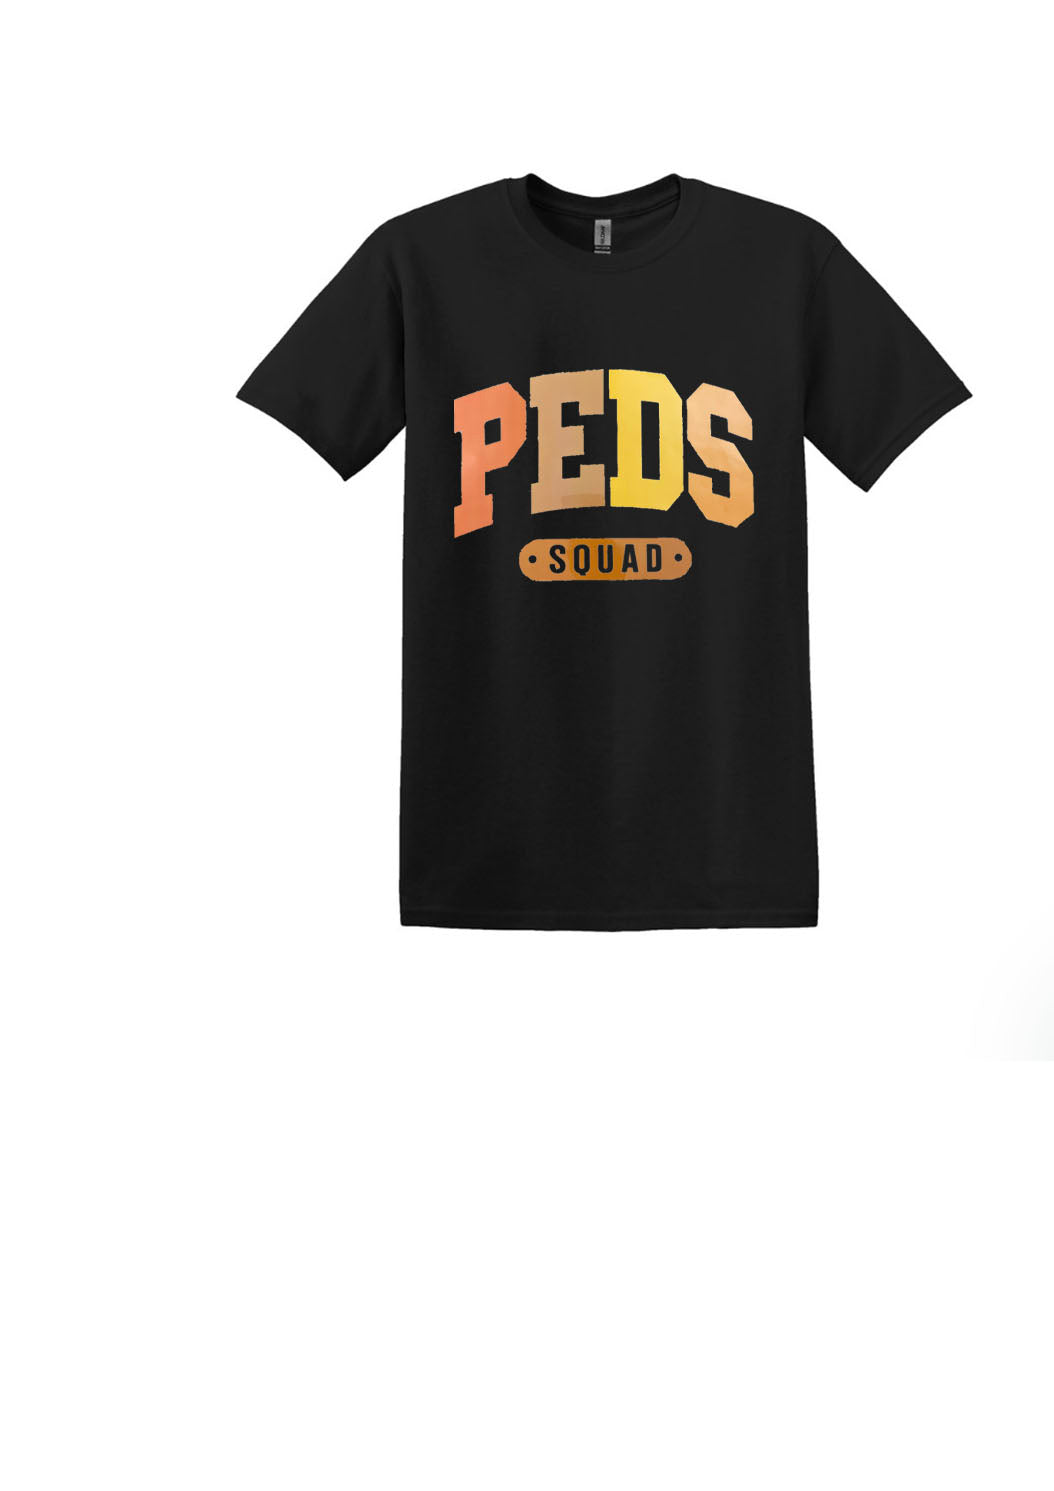 Peds Squad Unisex Shirt or Crew